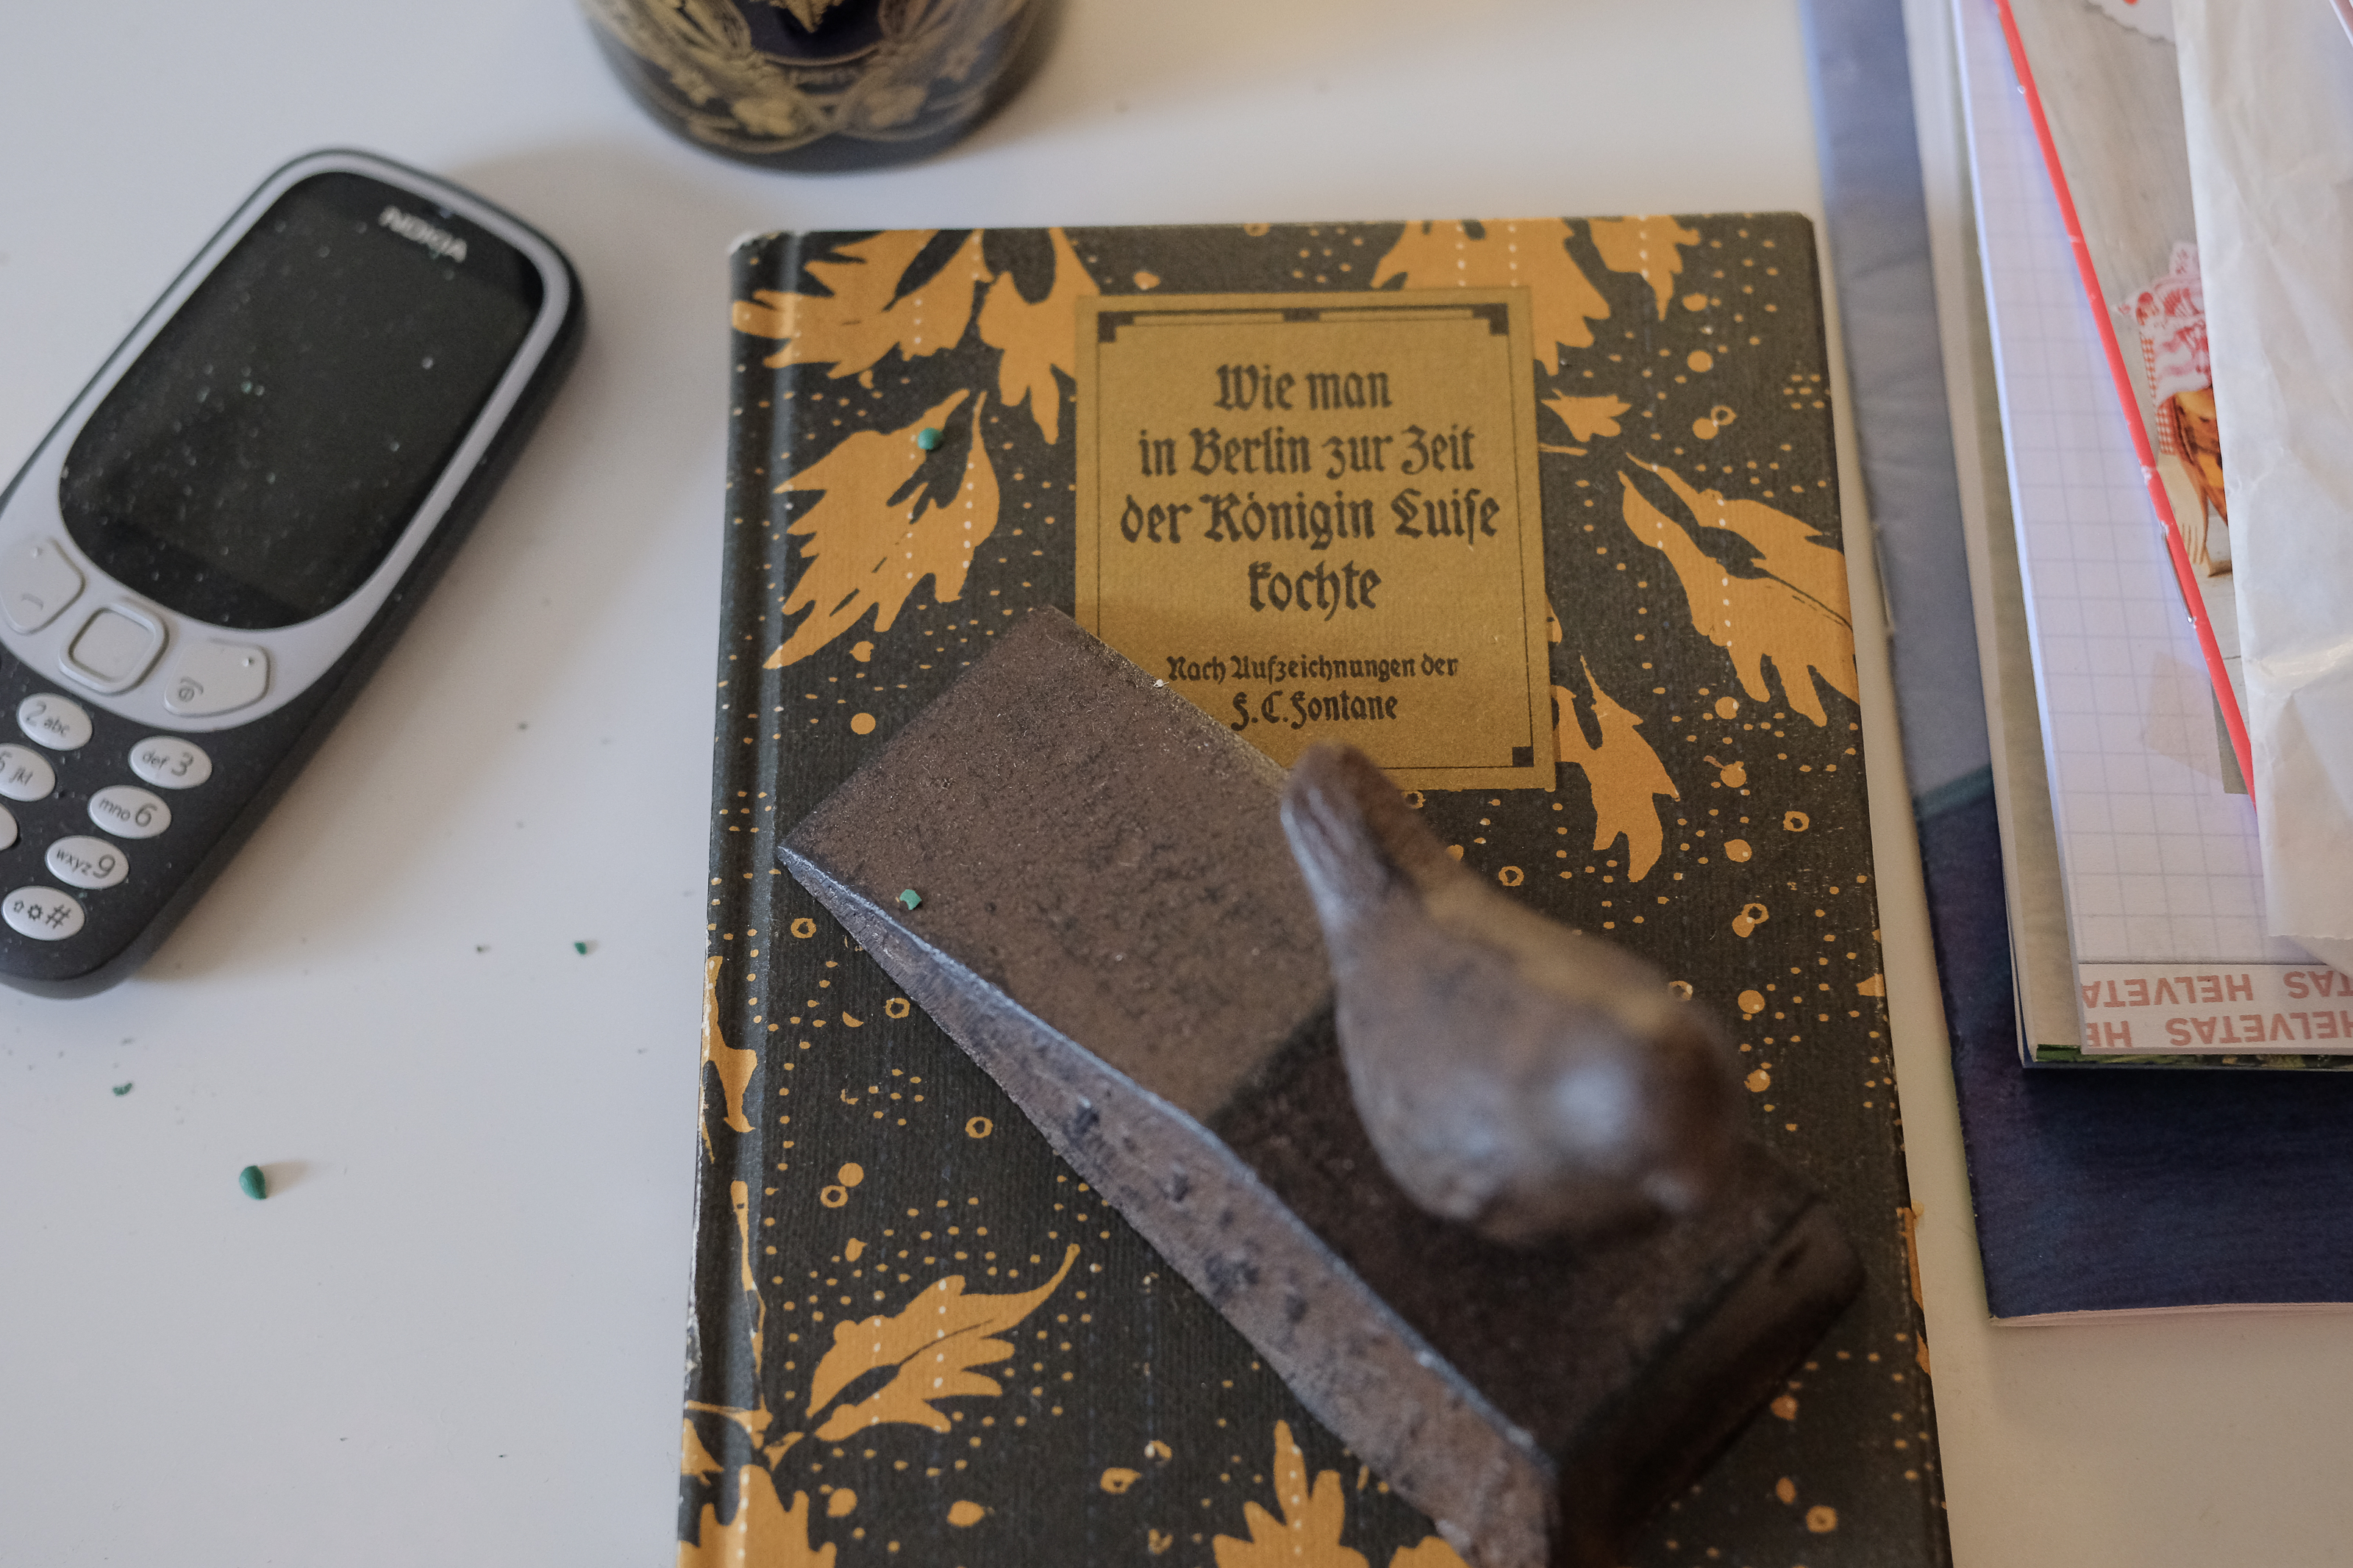 Im Zeichen des Kochens: Altes Kochbuch mit altem Telefon. Foto: Jan Graber, 2018.